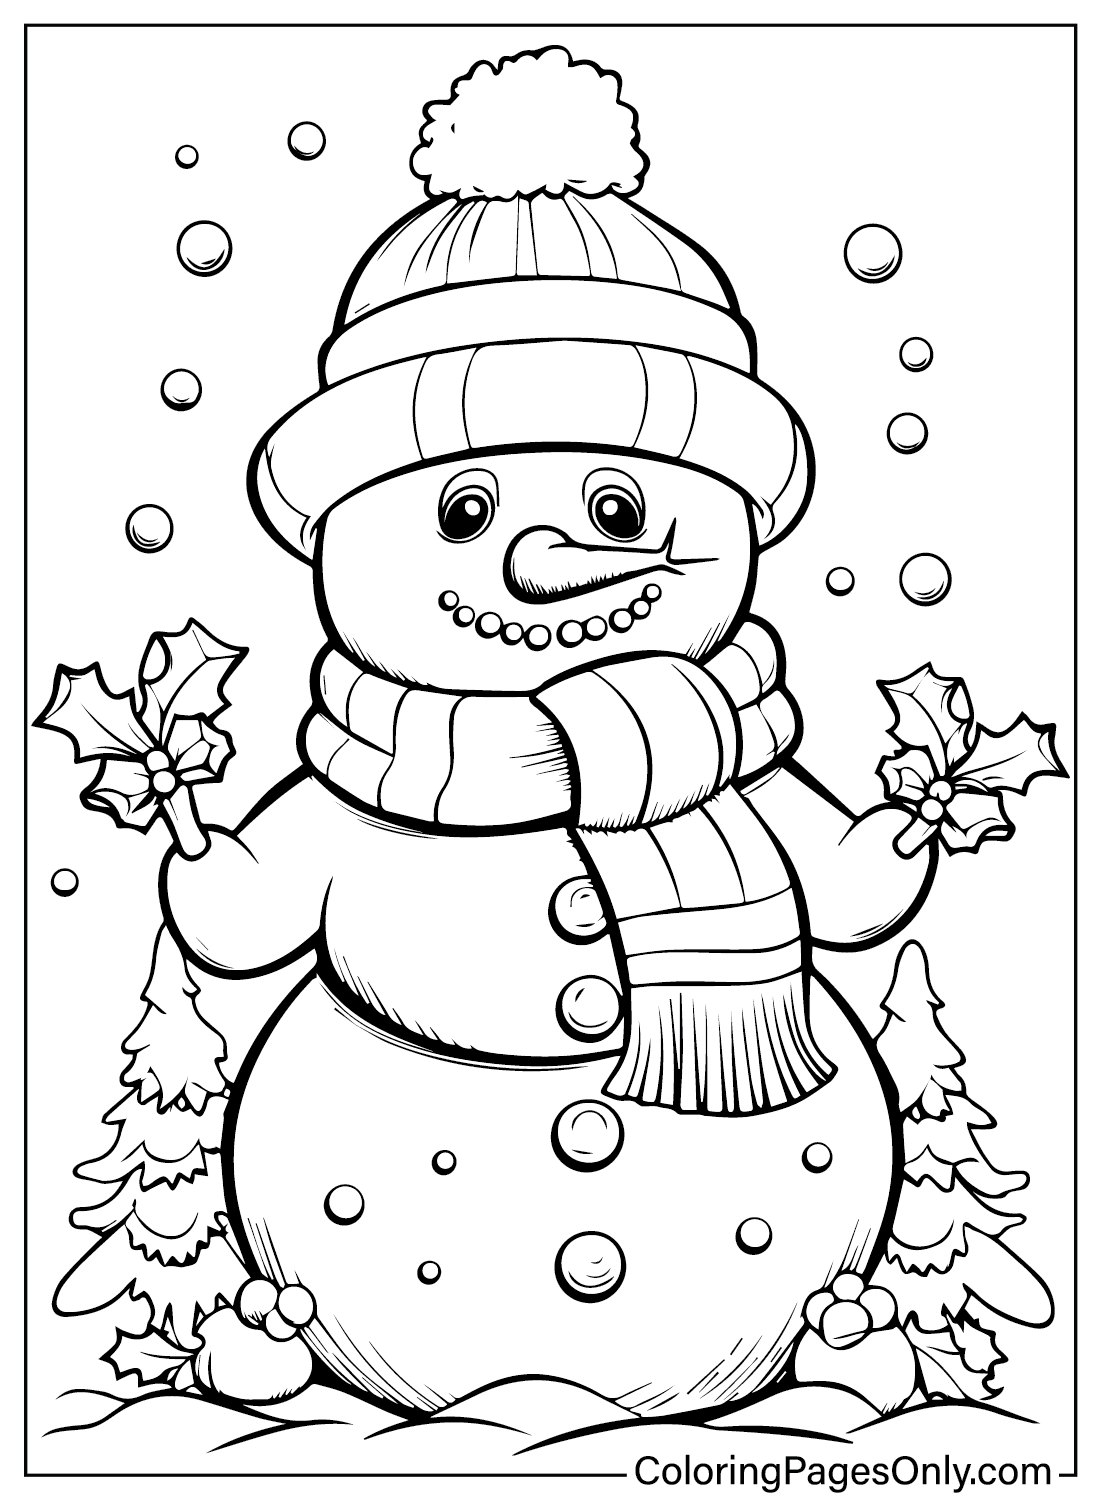 Бесплатная раскраска «Снеговик» за декабрь